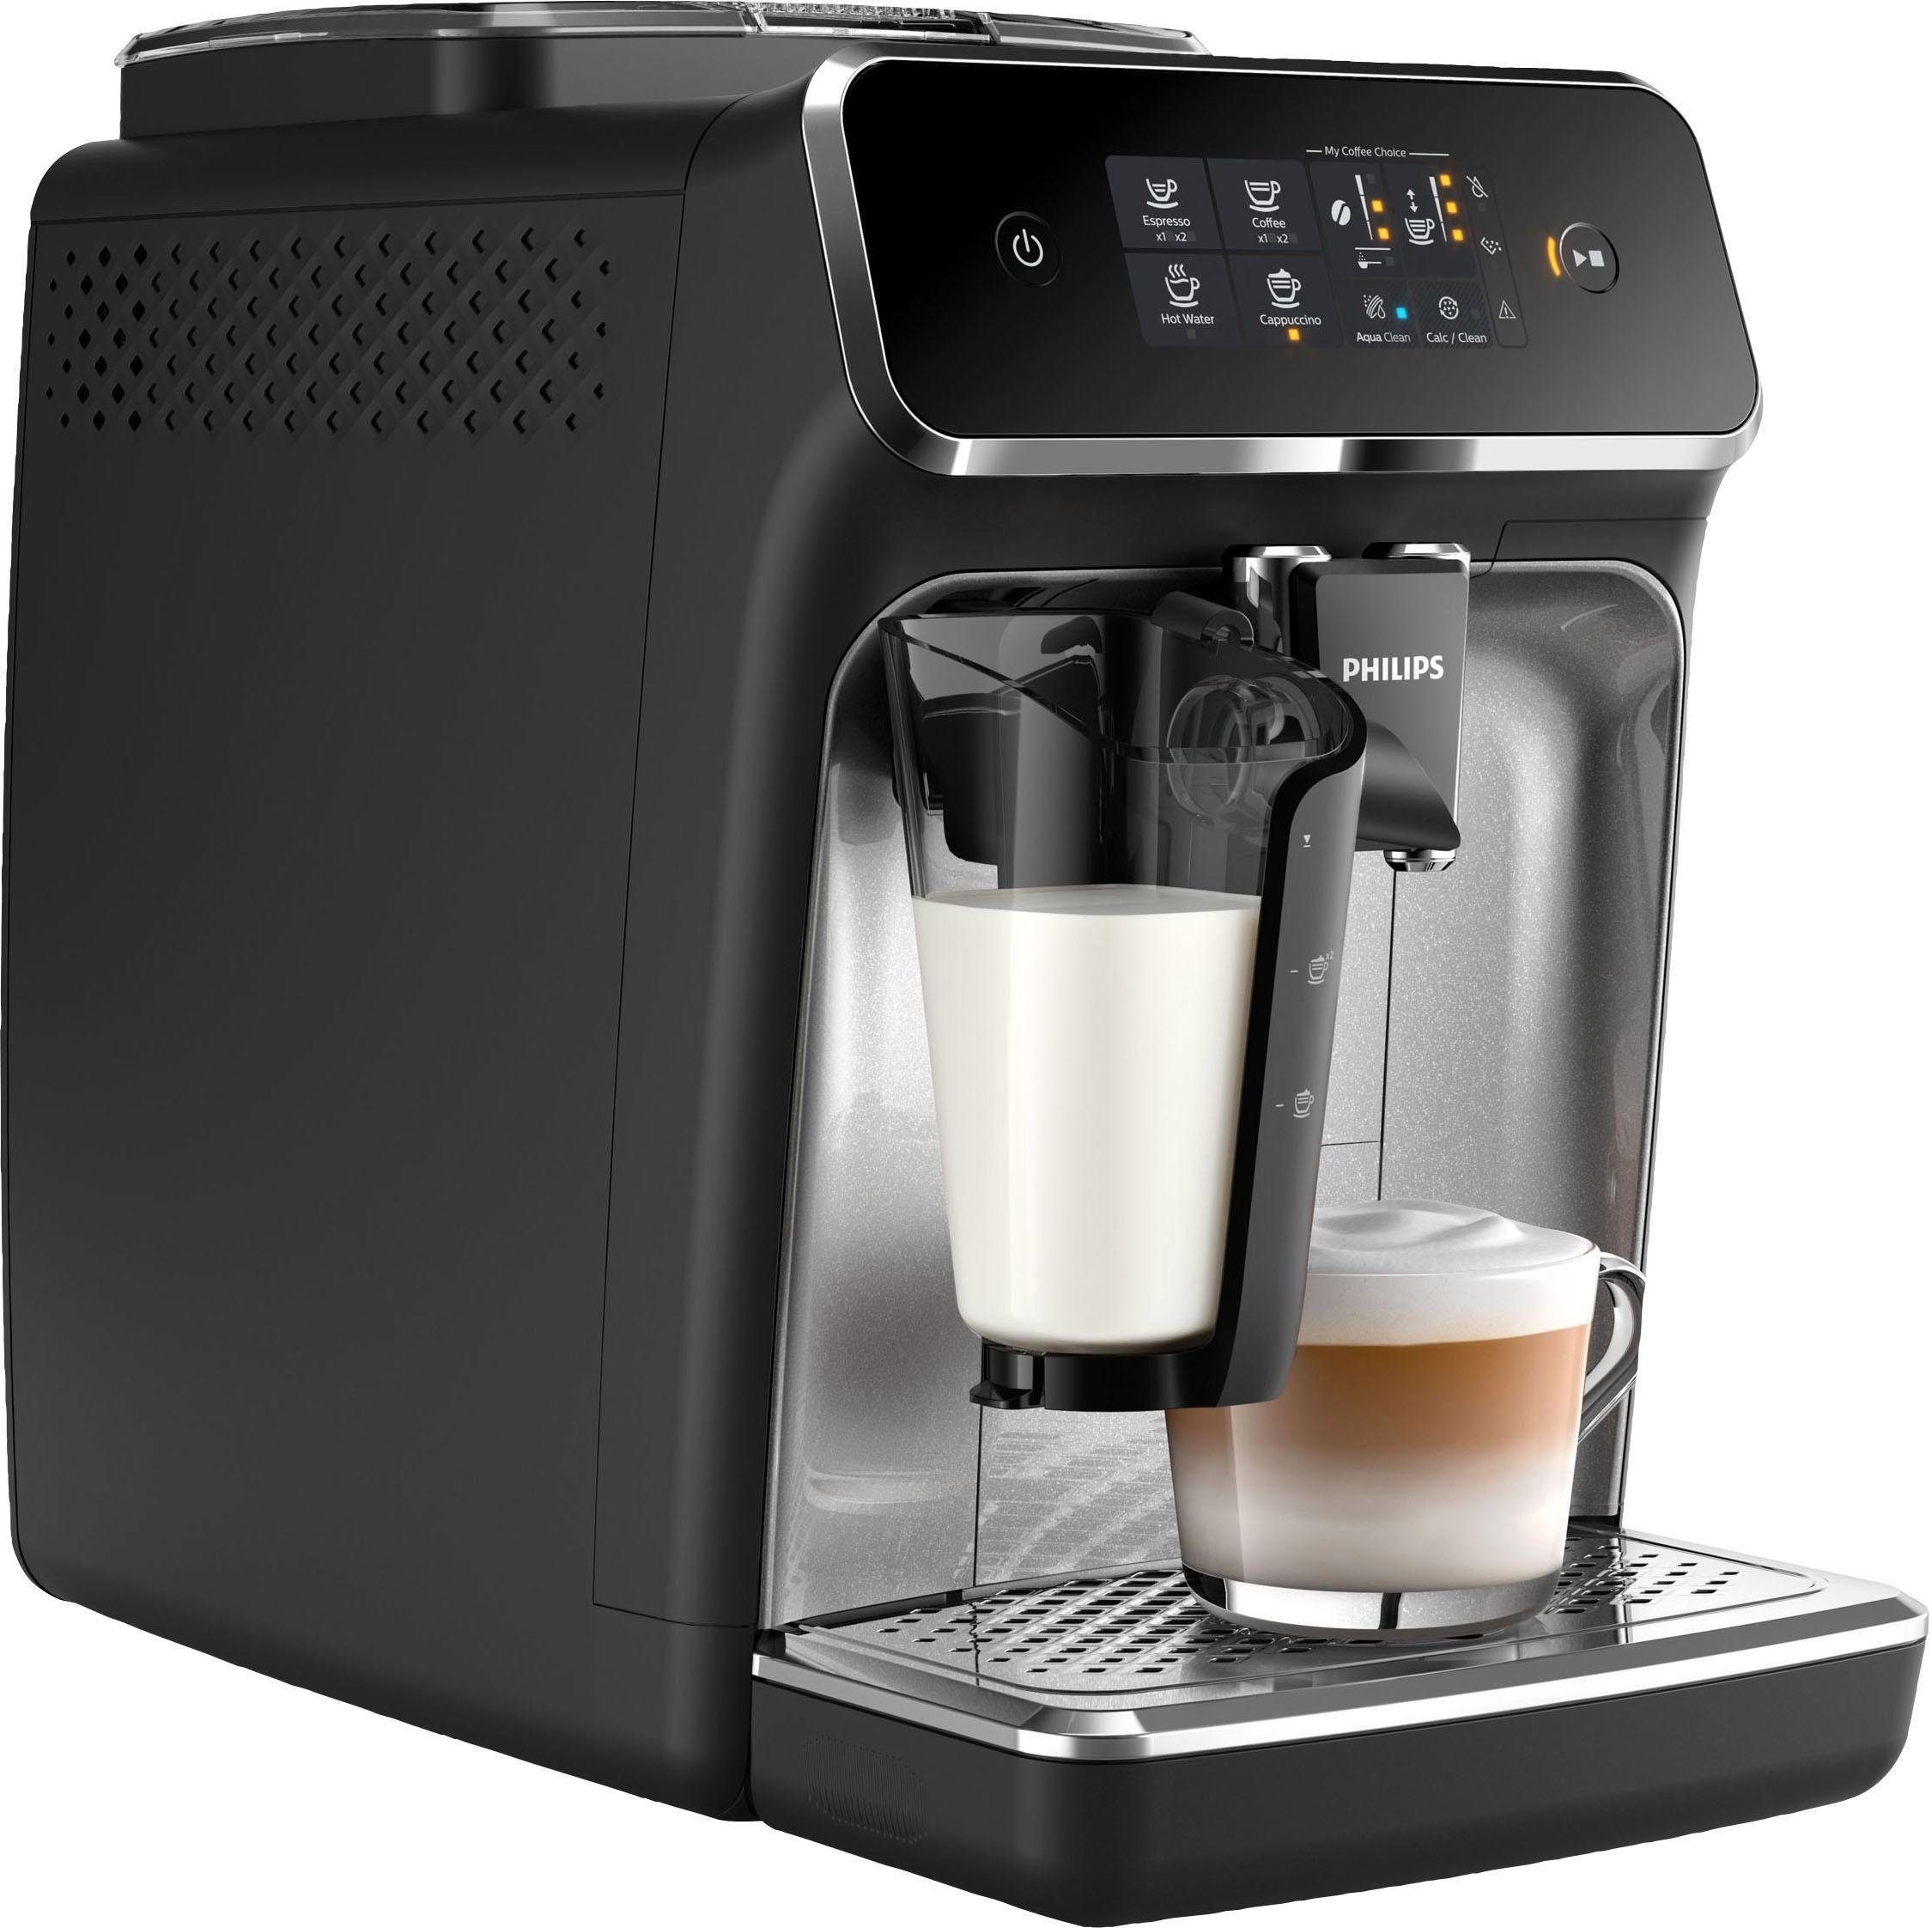 SensorTouch Lieblingsgetränks Philips EP2236/40 Kaffeevollautomat Auswahl Kaffeespezialitäten 3 zur 2200 Intuitive LatteGo, matt-schwarz, für Serie des Stärke, Oberfläche und anpassbarer